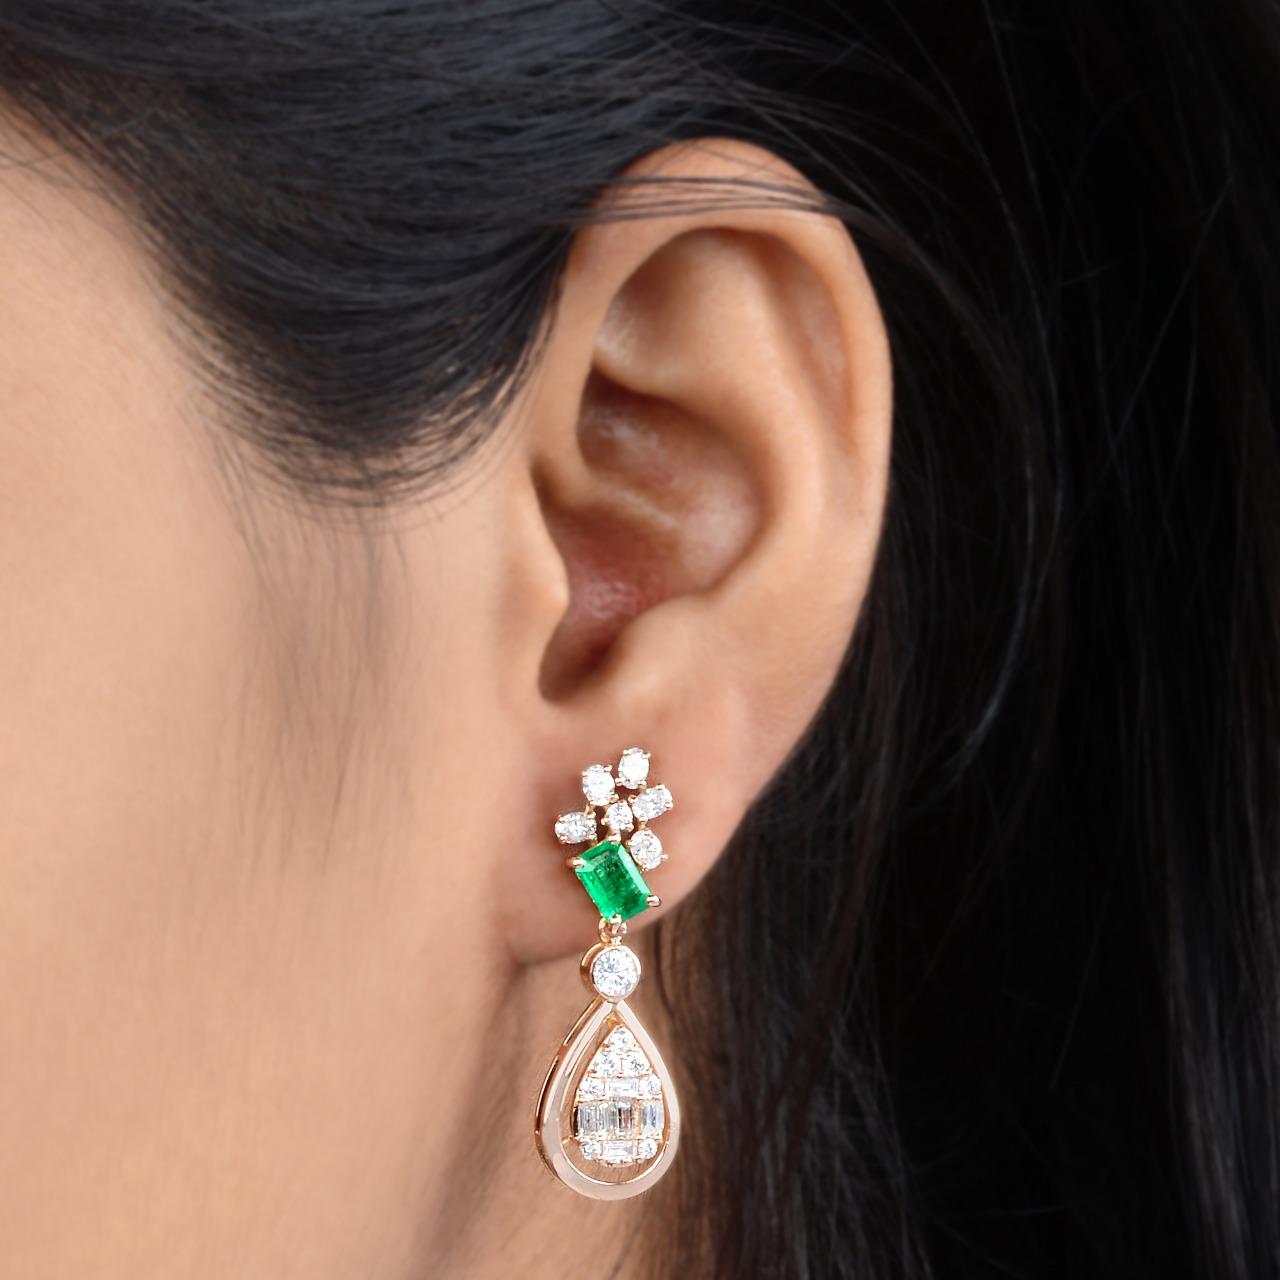 Diese wunderschönen Ohrringe aus 14-karätigem Gold sind von Hand mit einem Smaragd von 0,96 Karat und schimmernden Diamanten von 1,60 Karat besetzt. 

FOLLOW MEGHNA JEWELS Storefront, um die neueste Kollektion und exklusive Stücke zu sehen. Meghna